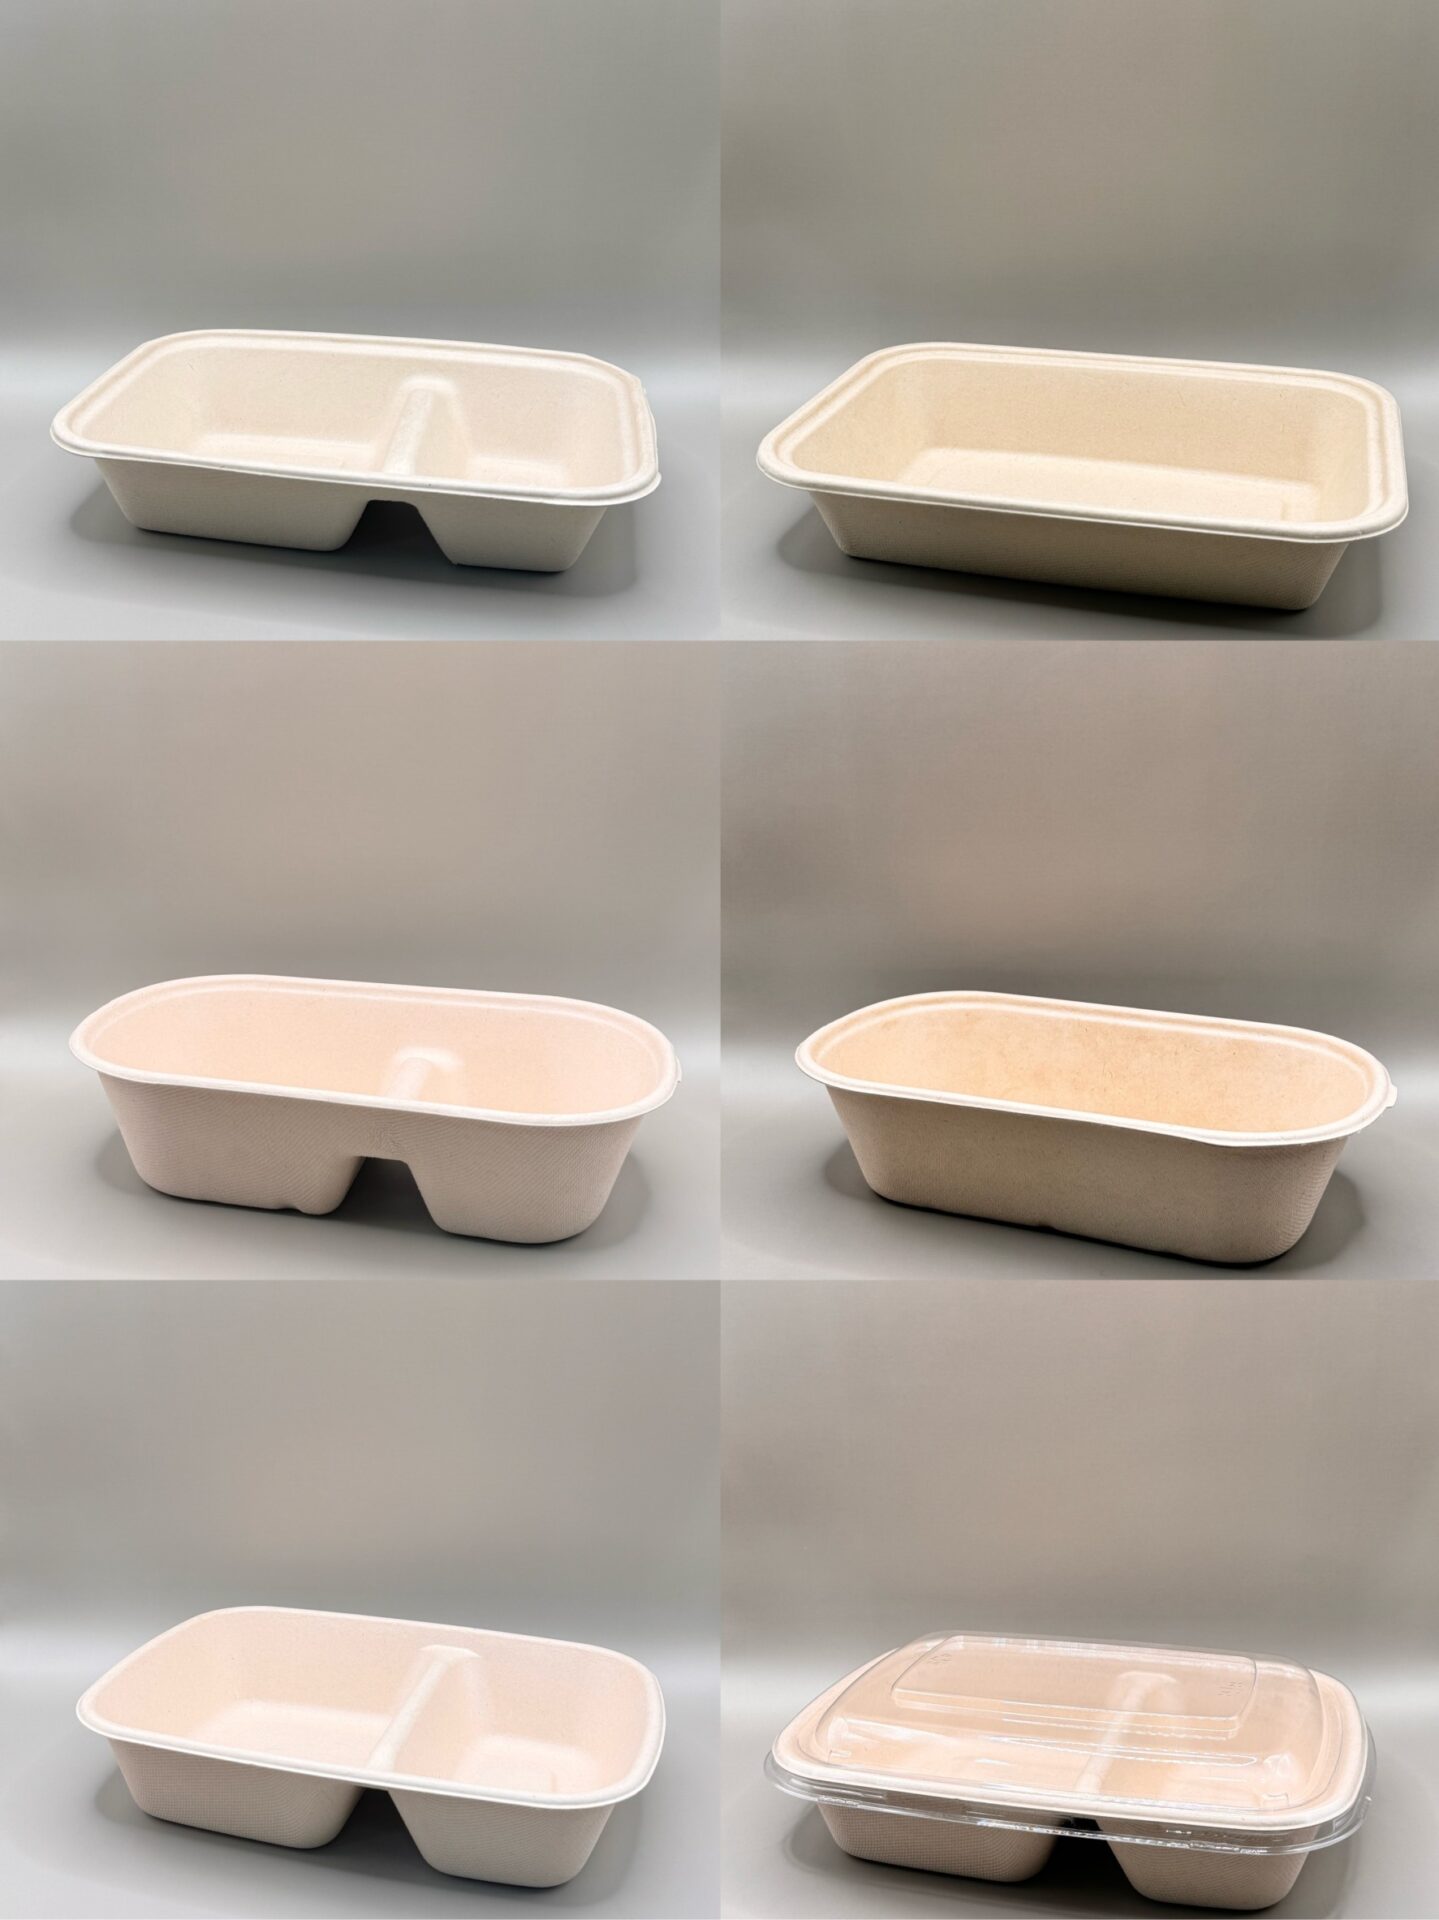 植纖餐盒系列全新上市